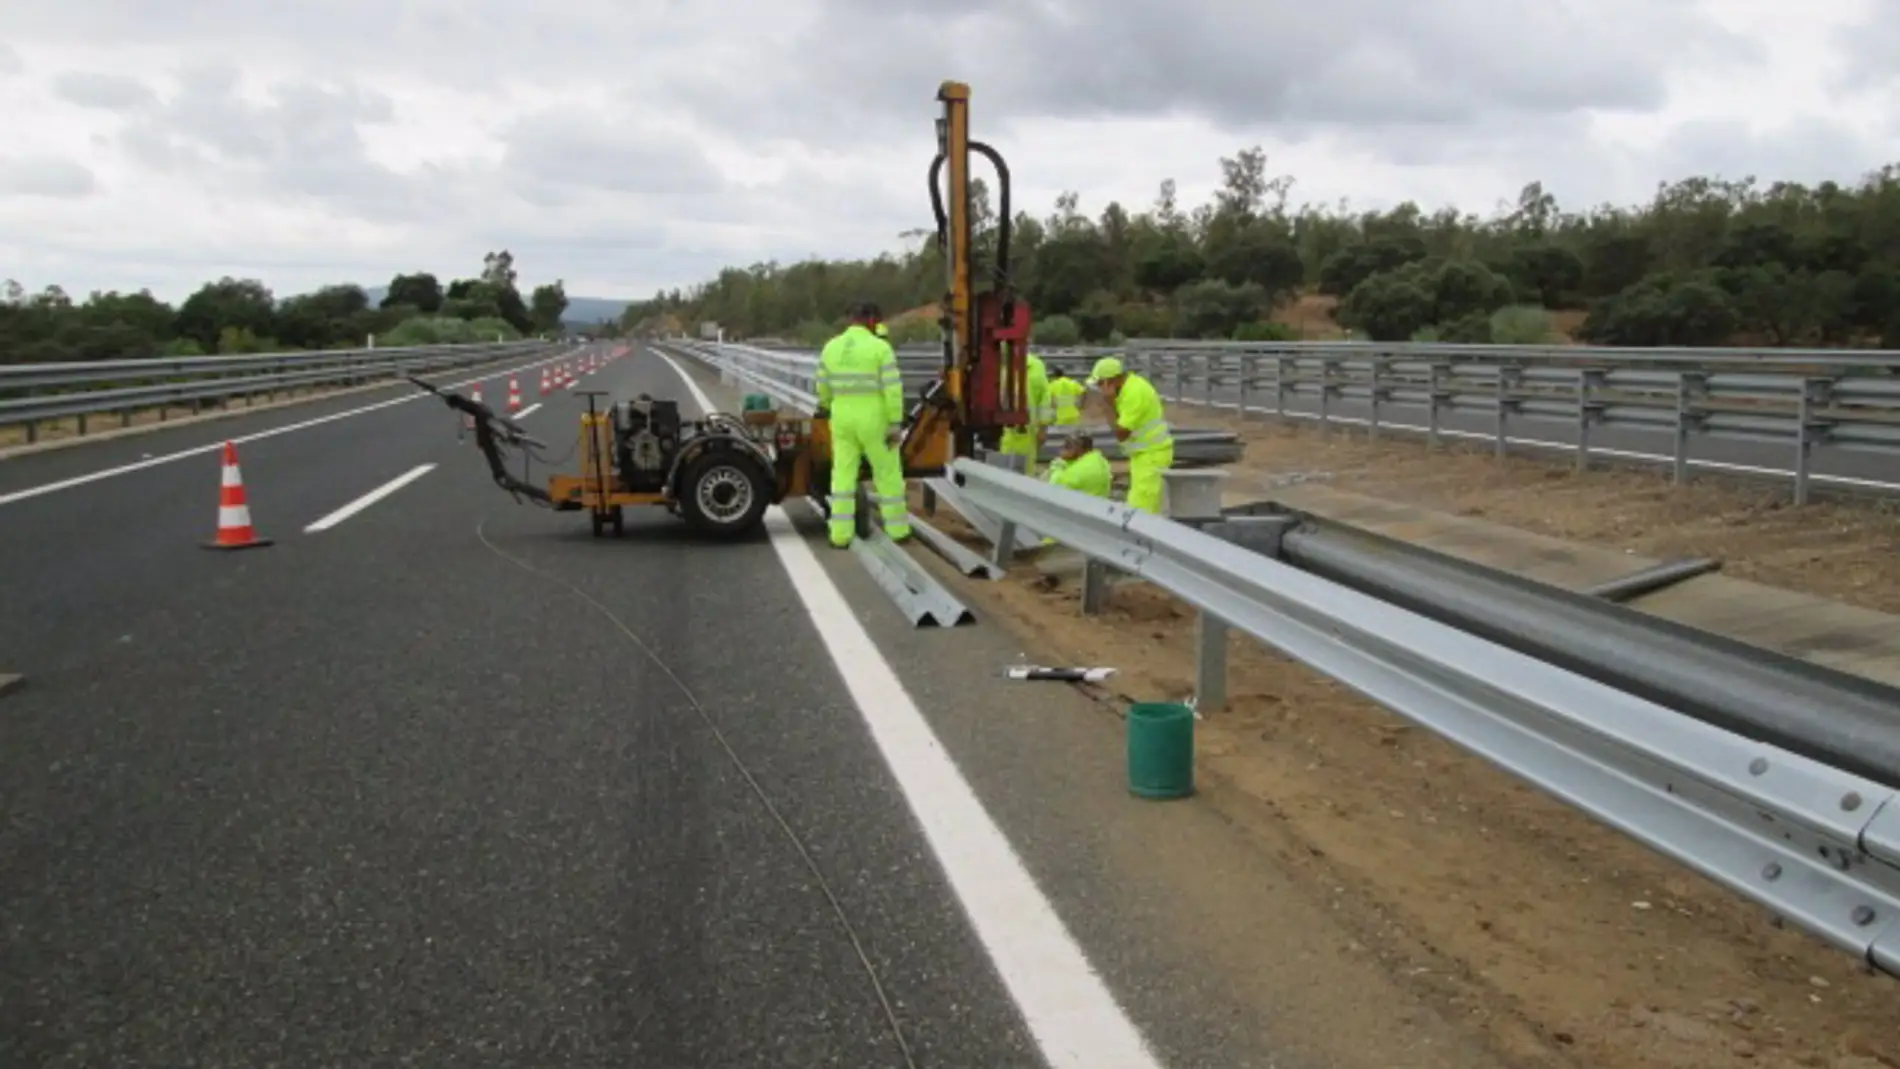 El Ministerio de Transportes licita por 13,8 millones un contrato de conservación de carreteras en la provincia de Badajoz